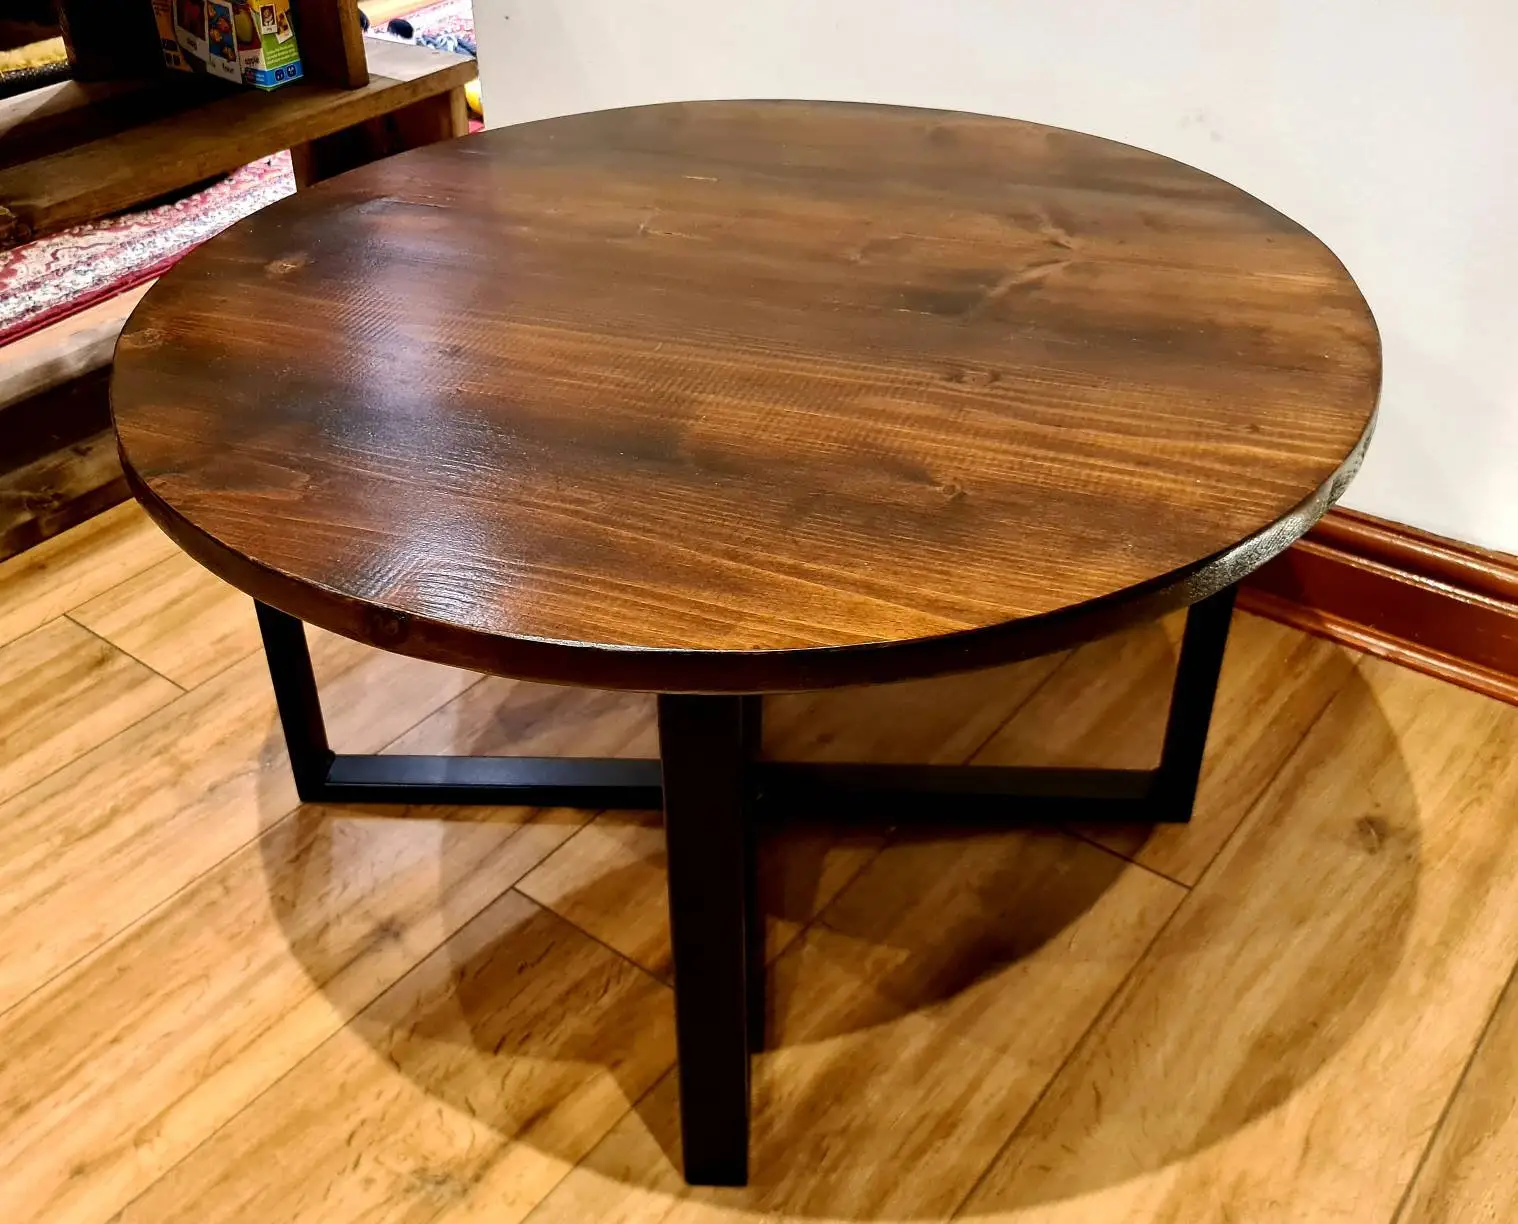 Meja kopi bersarang Set meja kopi 2 untuk ruang tamu kayu meja kopi bulat